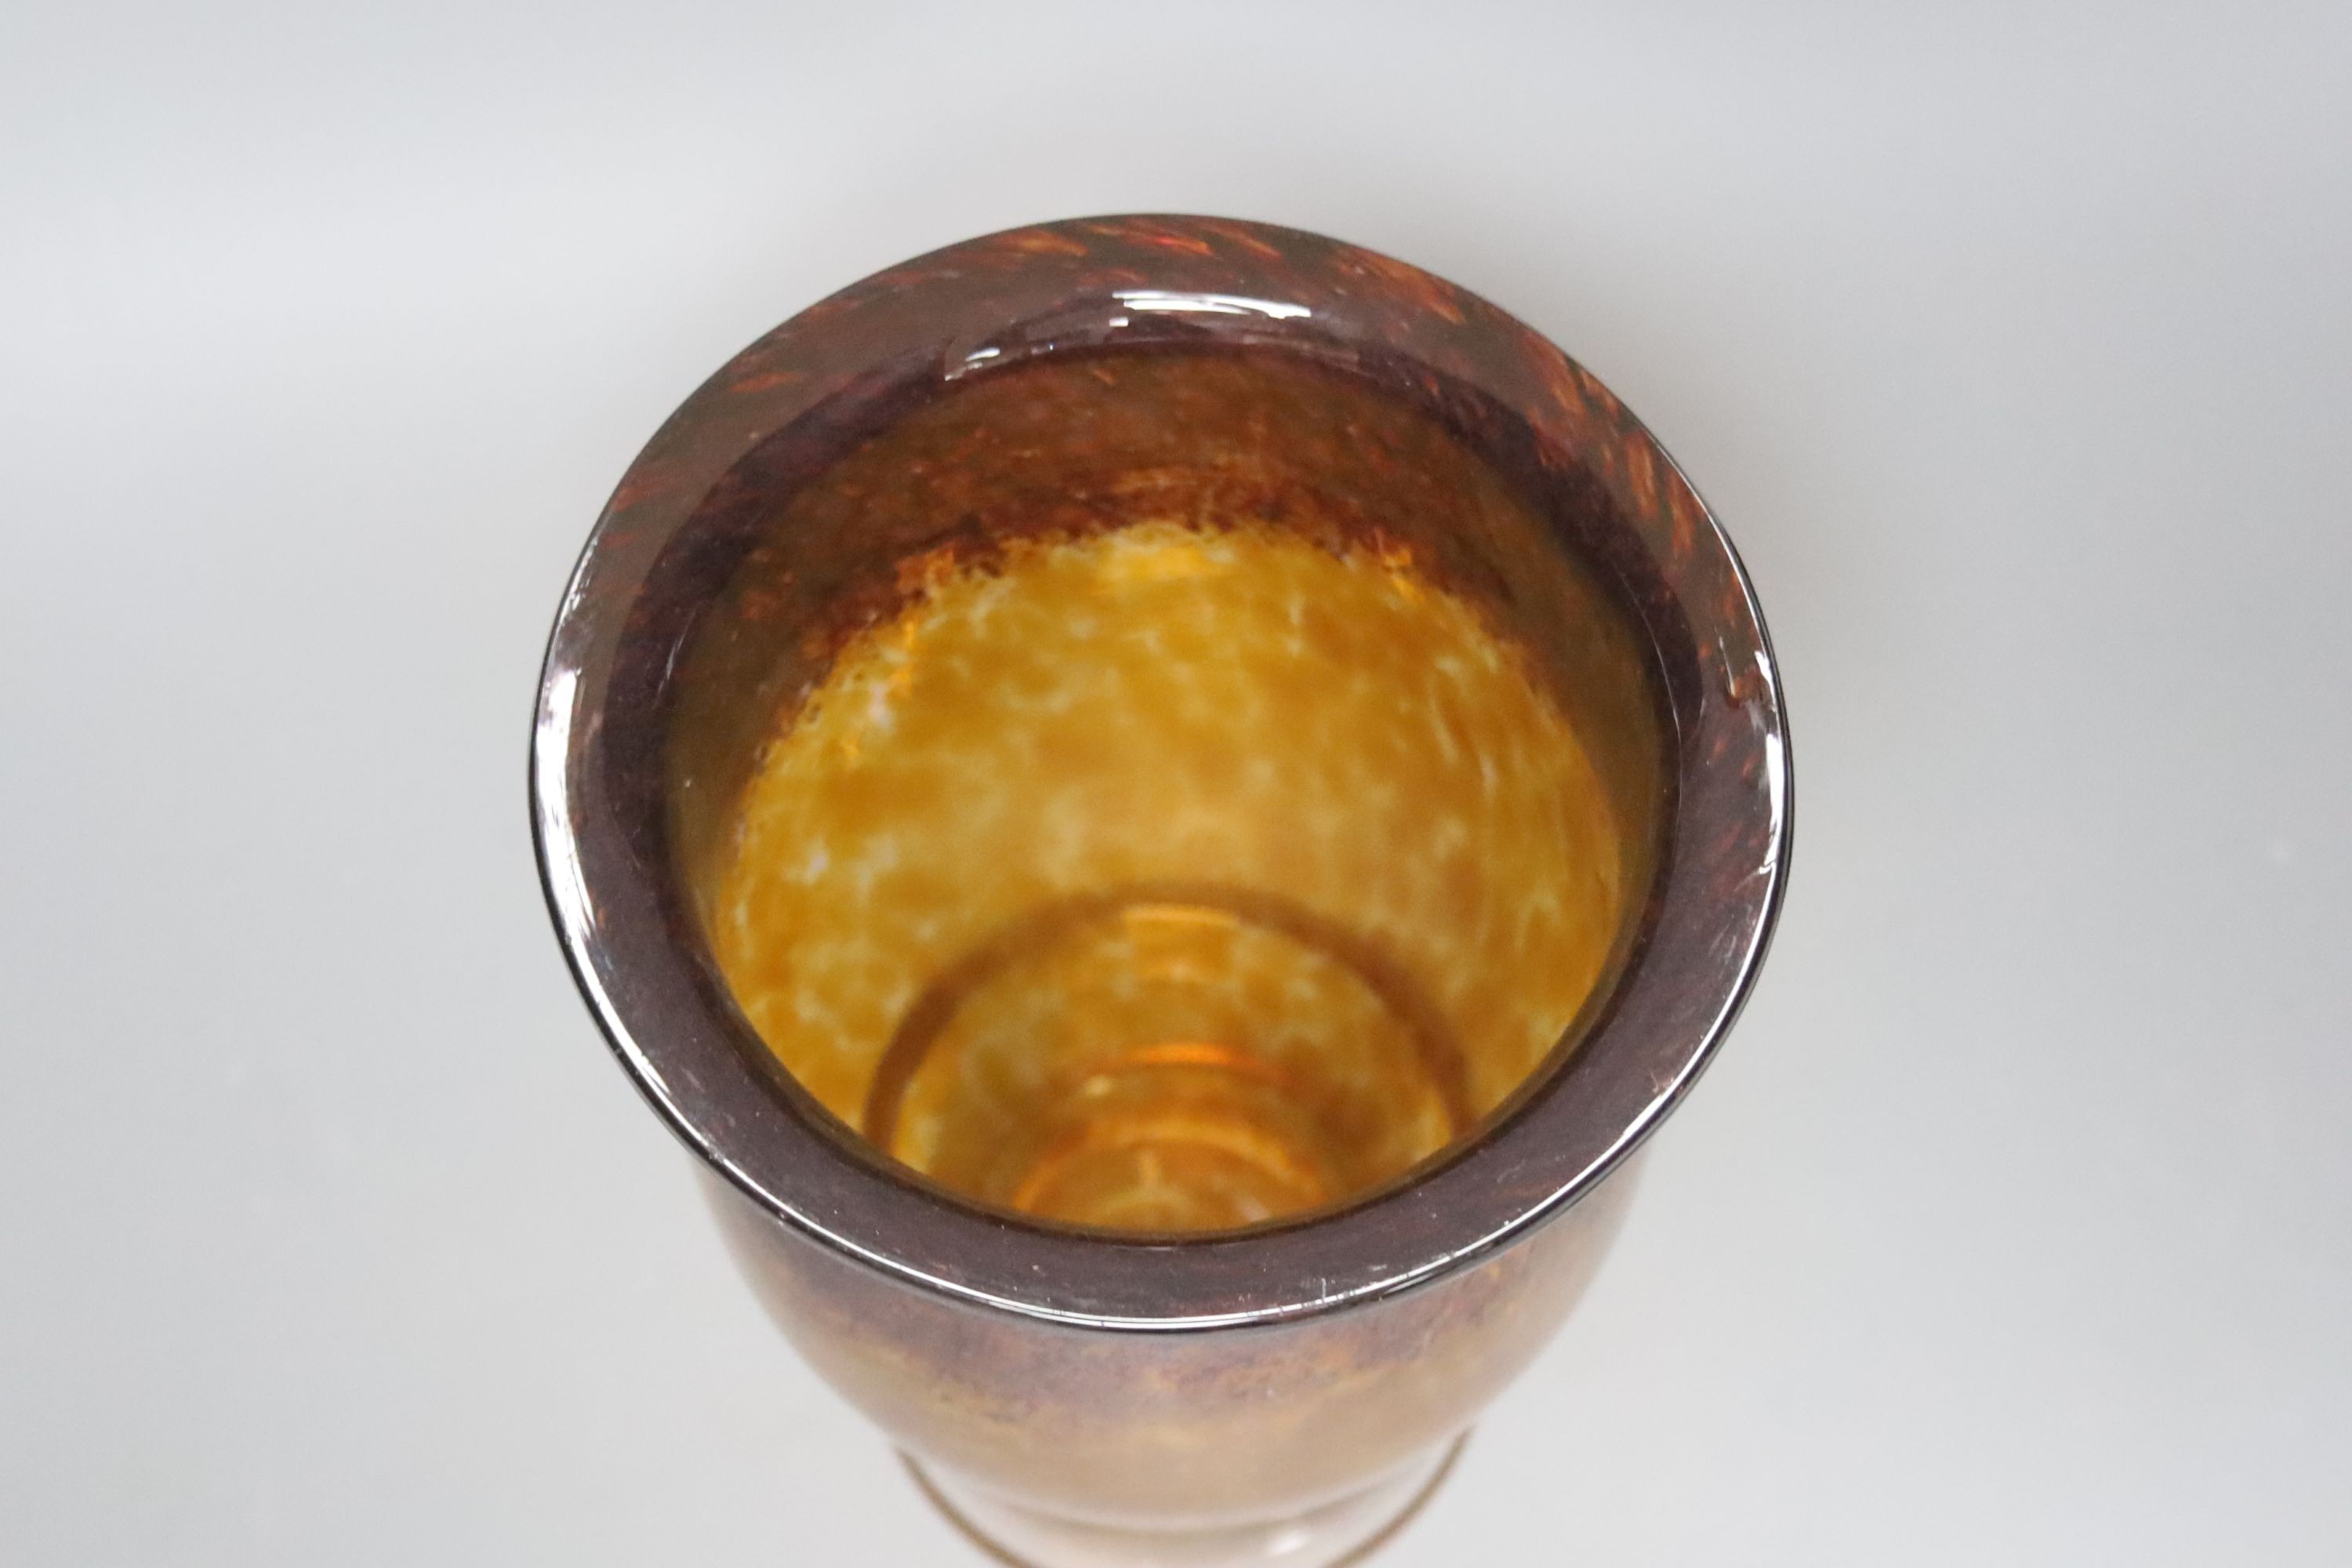 A Monart mottled amber glass vase, 20cm